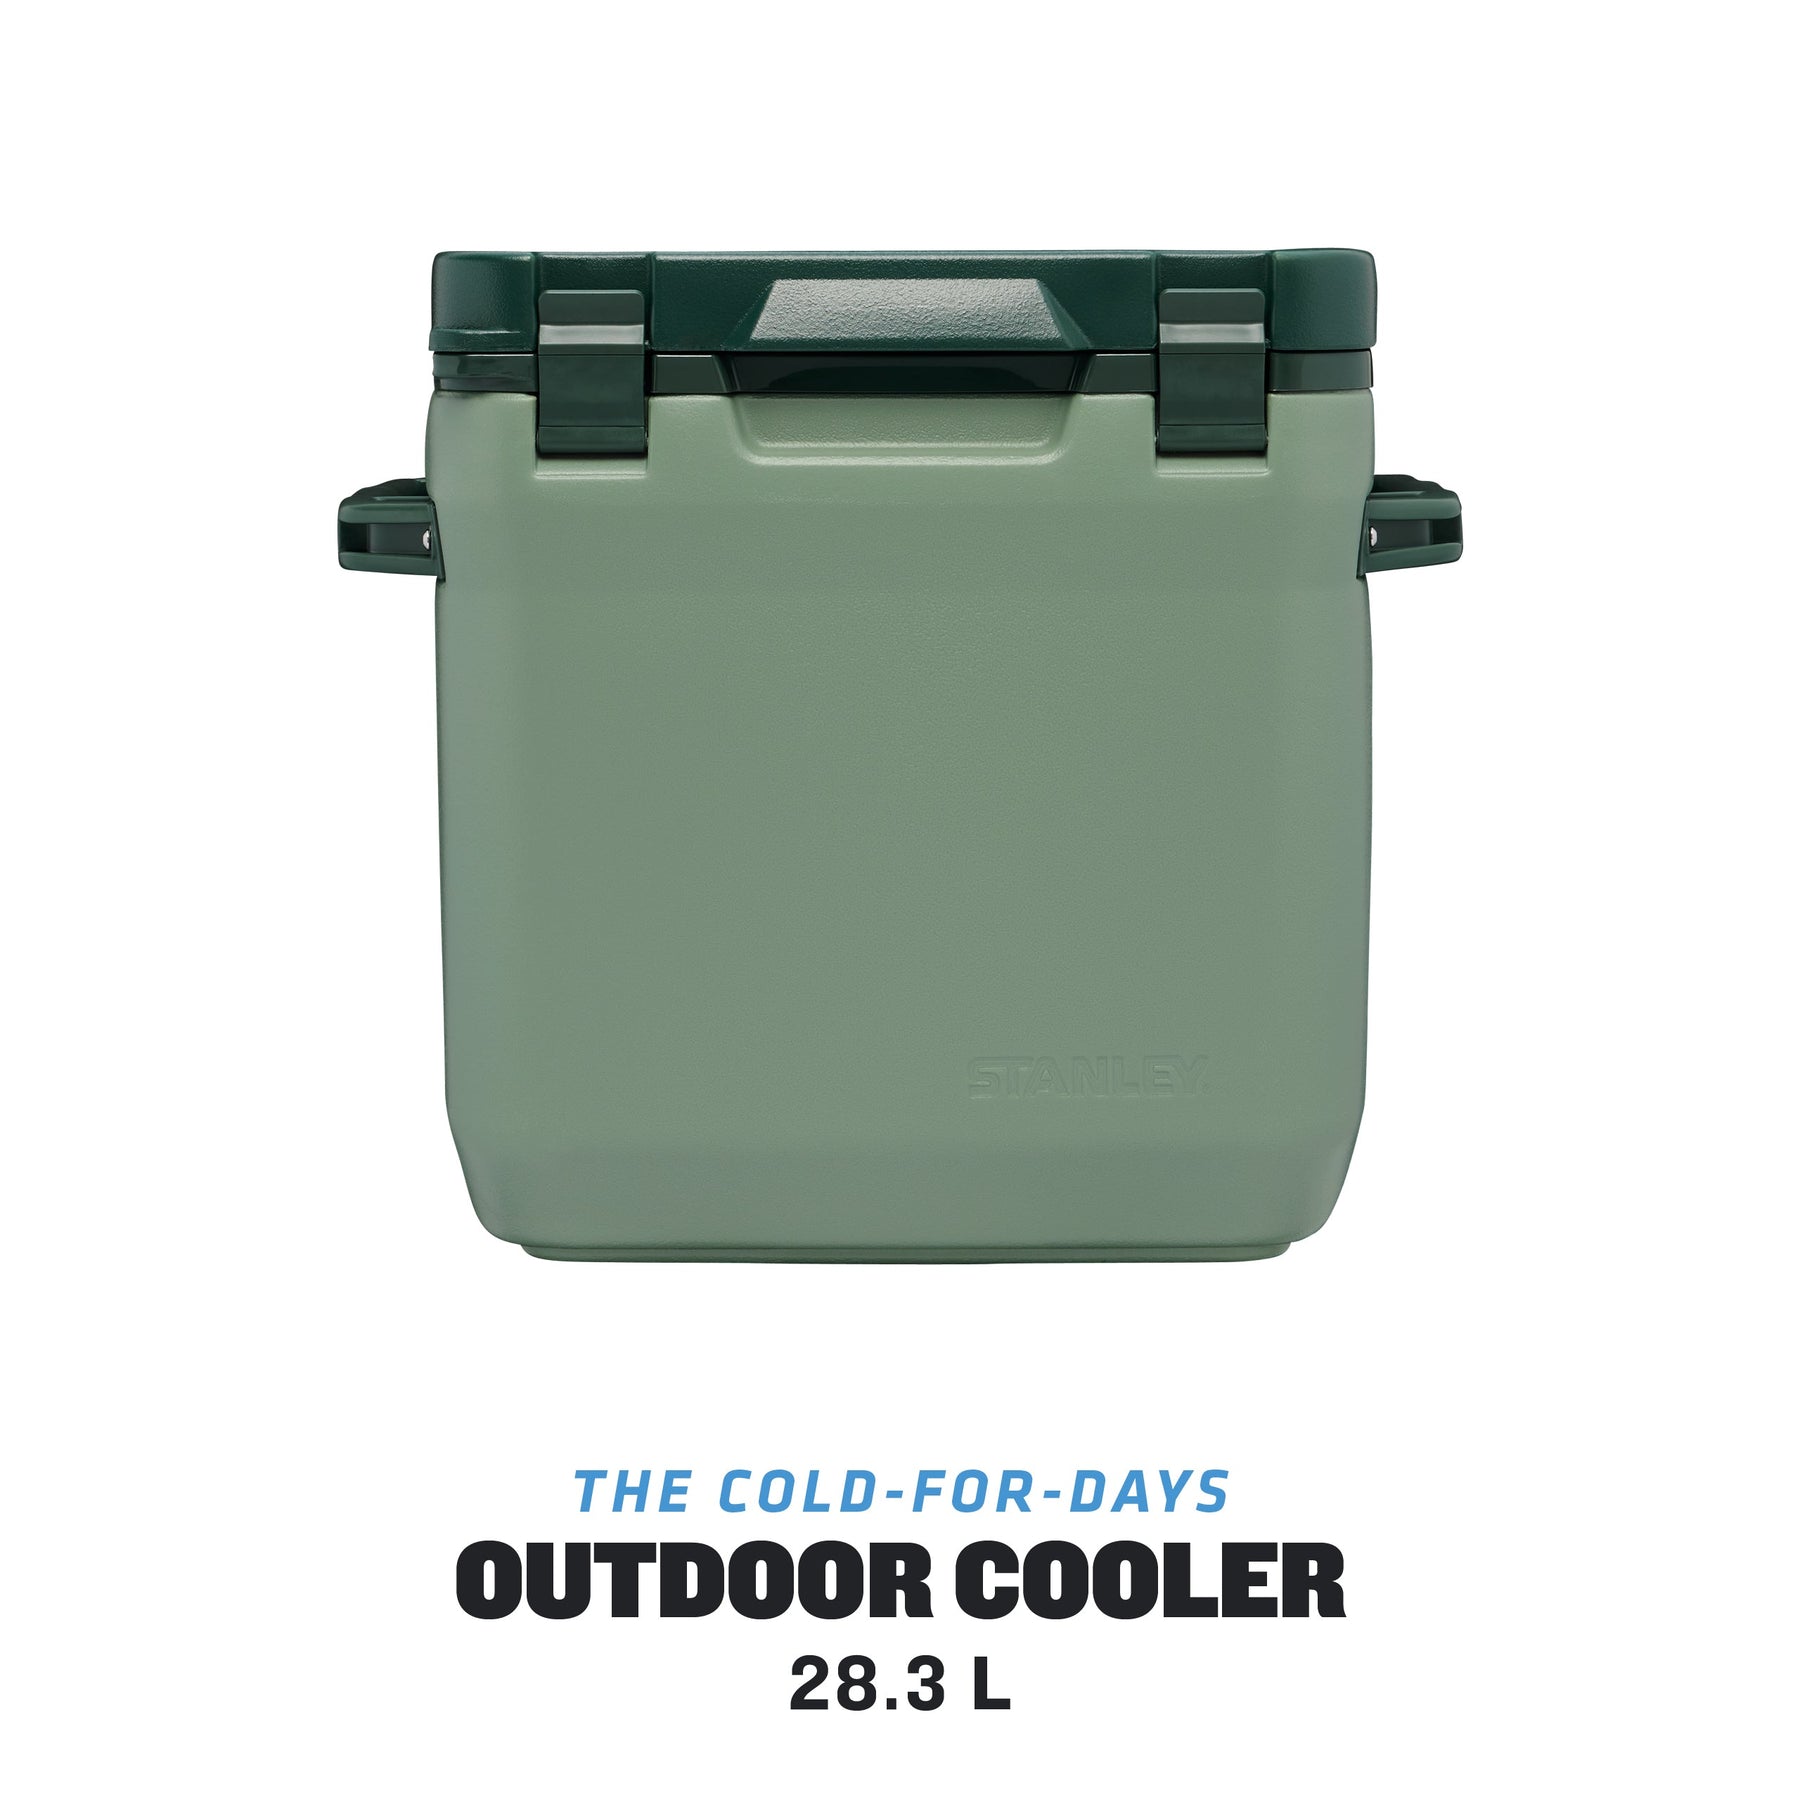 Stanley Adventure Outdoor Cooler 28.3 l, Green (10-01936-038)